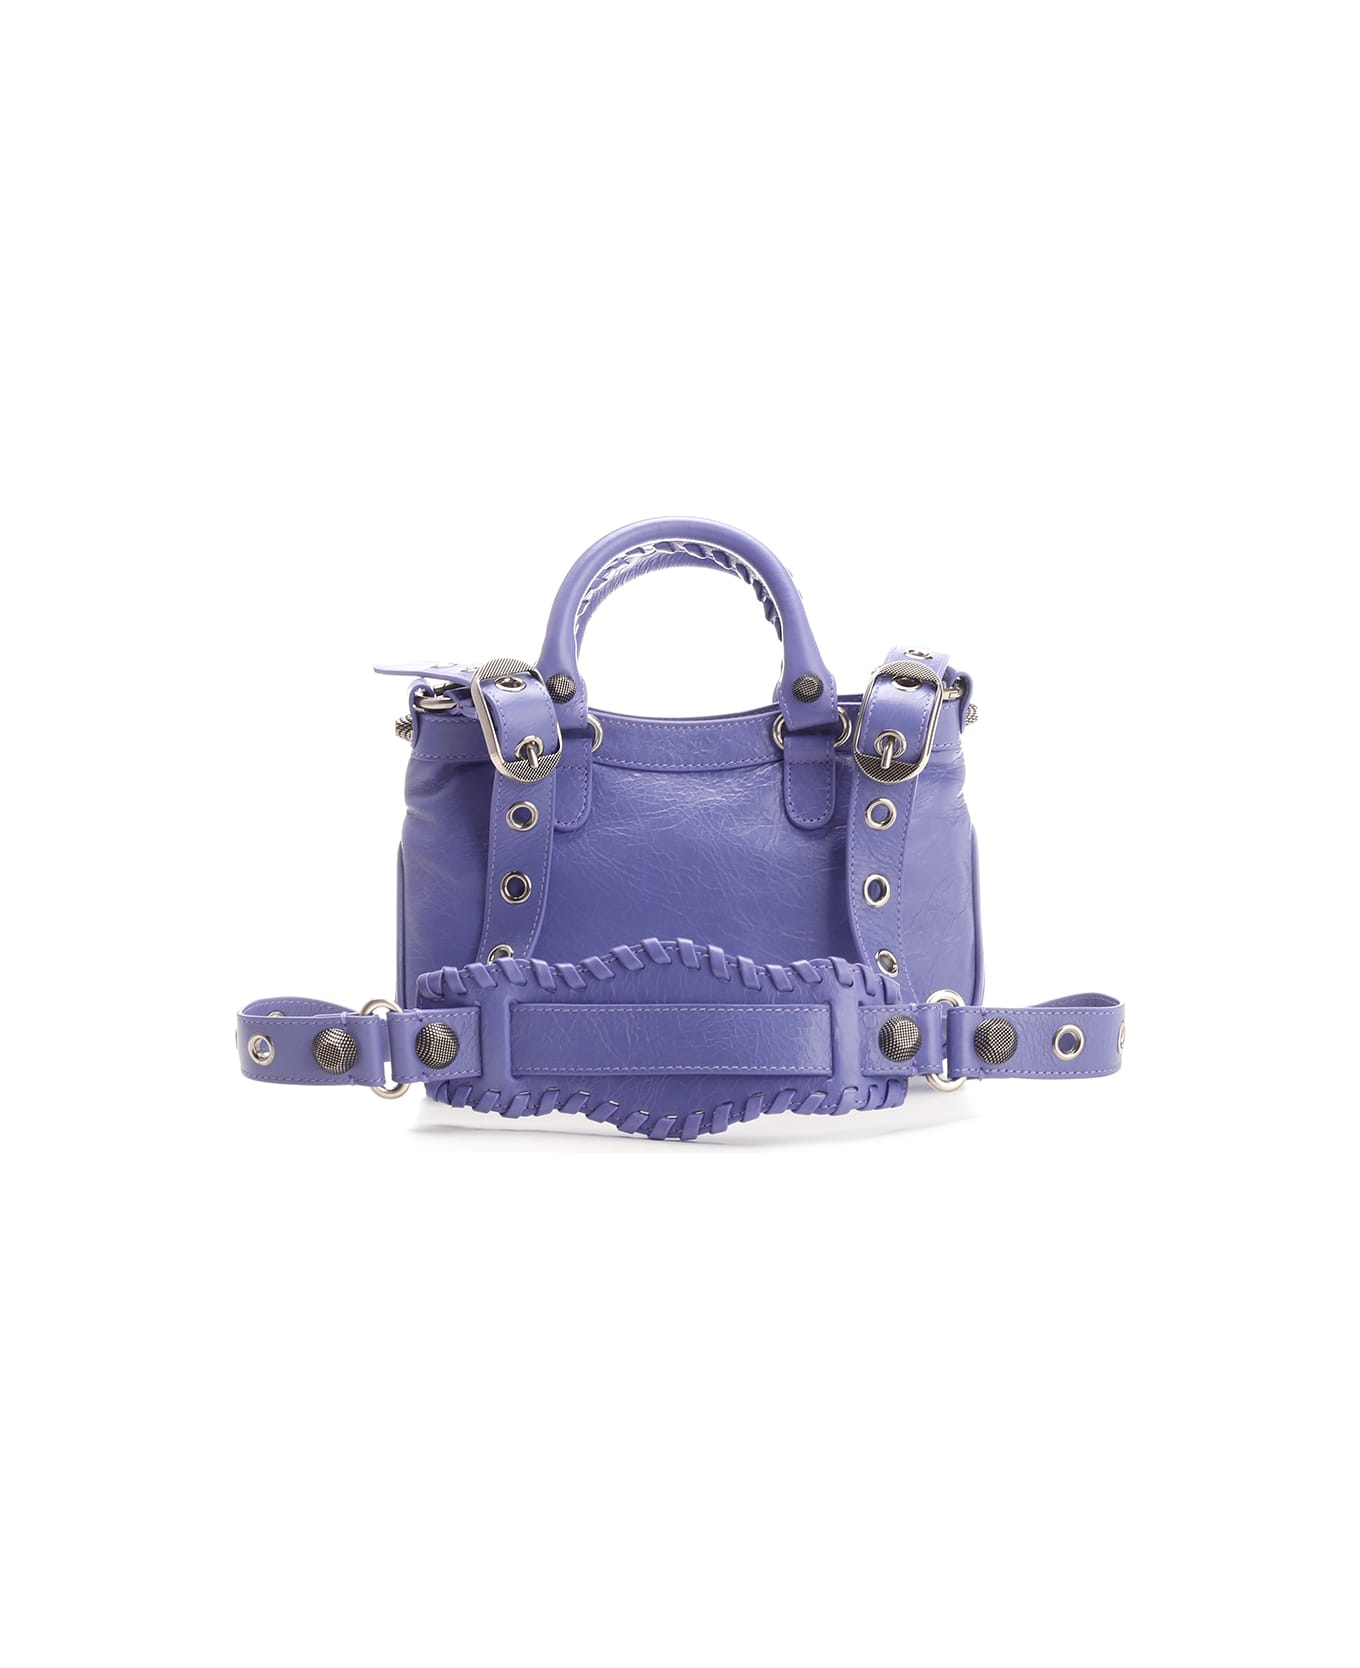 Balenciaga 751523/1vg9y 5407 - Purple